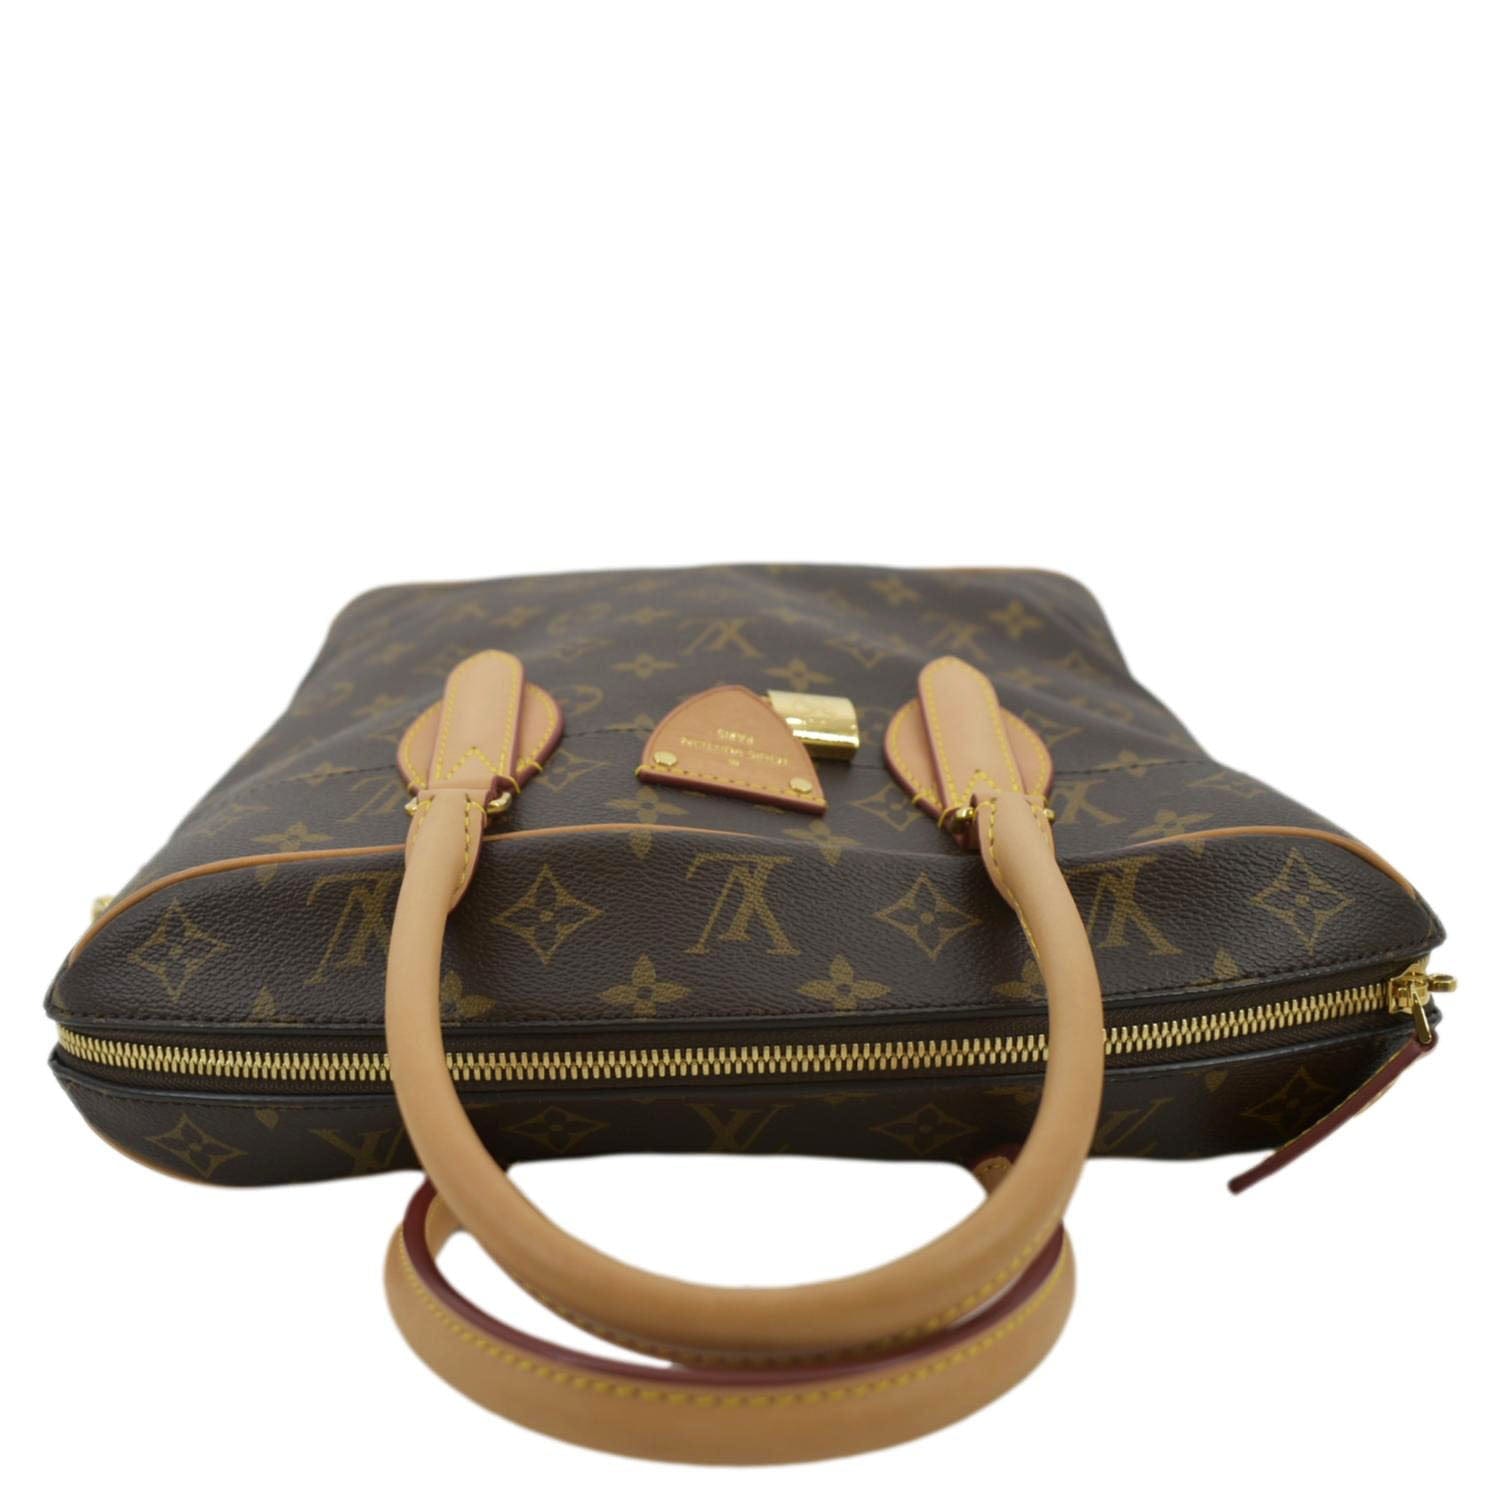 Louis Vuitton Monogram Canvas Carryall MM NM Shoulder Bag (SHF